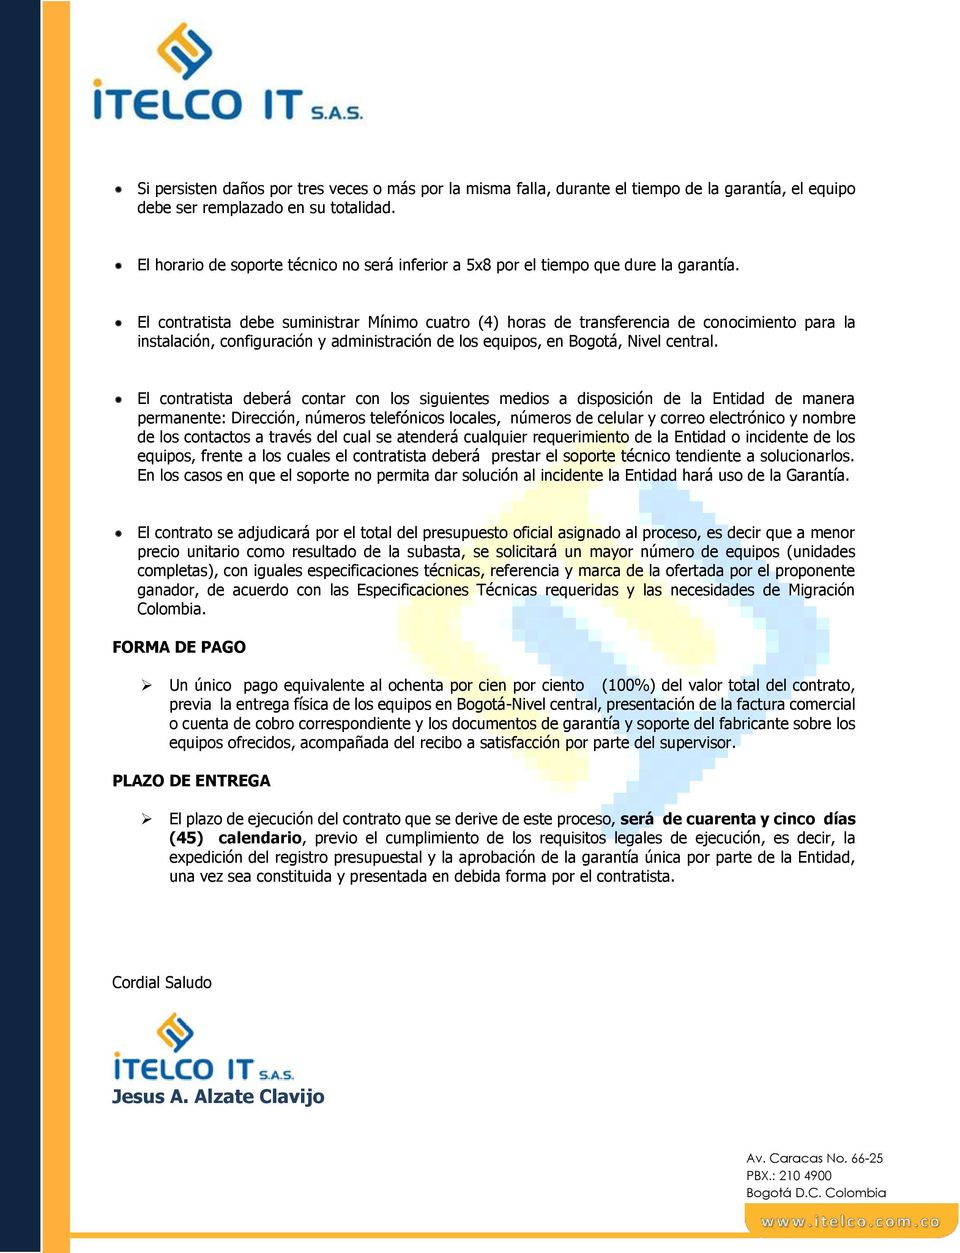 El contratista debe suministrar Mínimo cuatro (4) horas de transferencia de conocimiento para la instalación, configuración y administración de los equipos, en Bogotá, Nivel central.